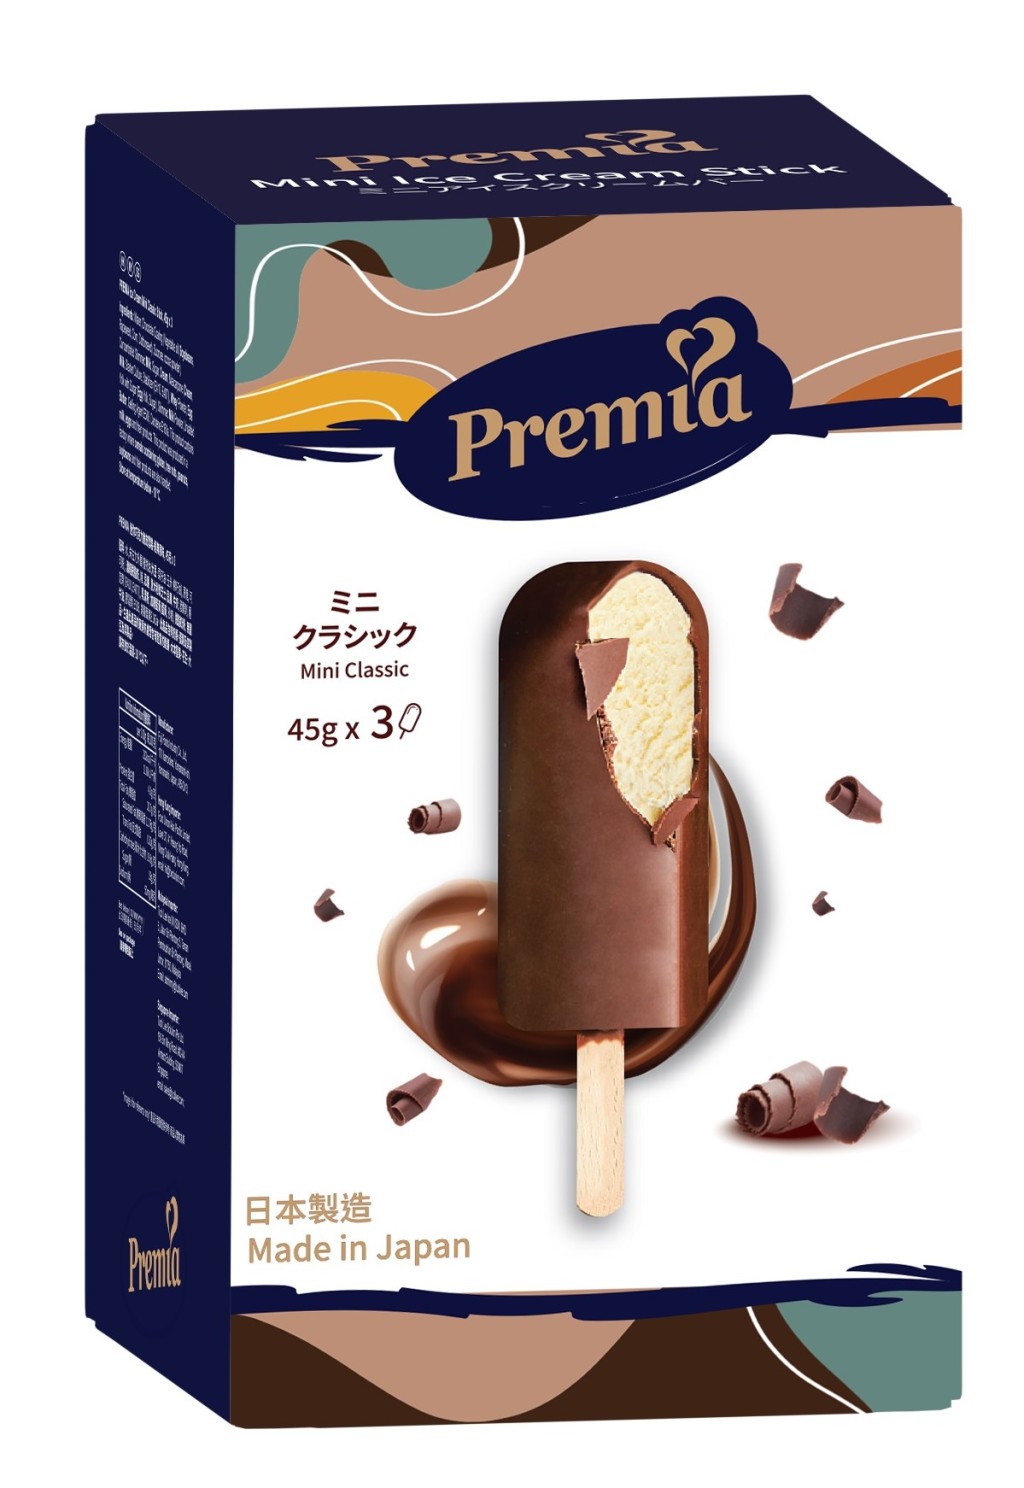 新上架: Premia迷你巧克力脆皮雪糕—經典原味